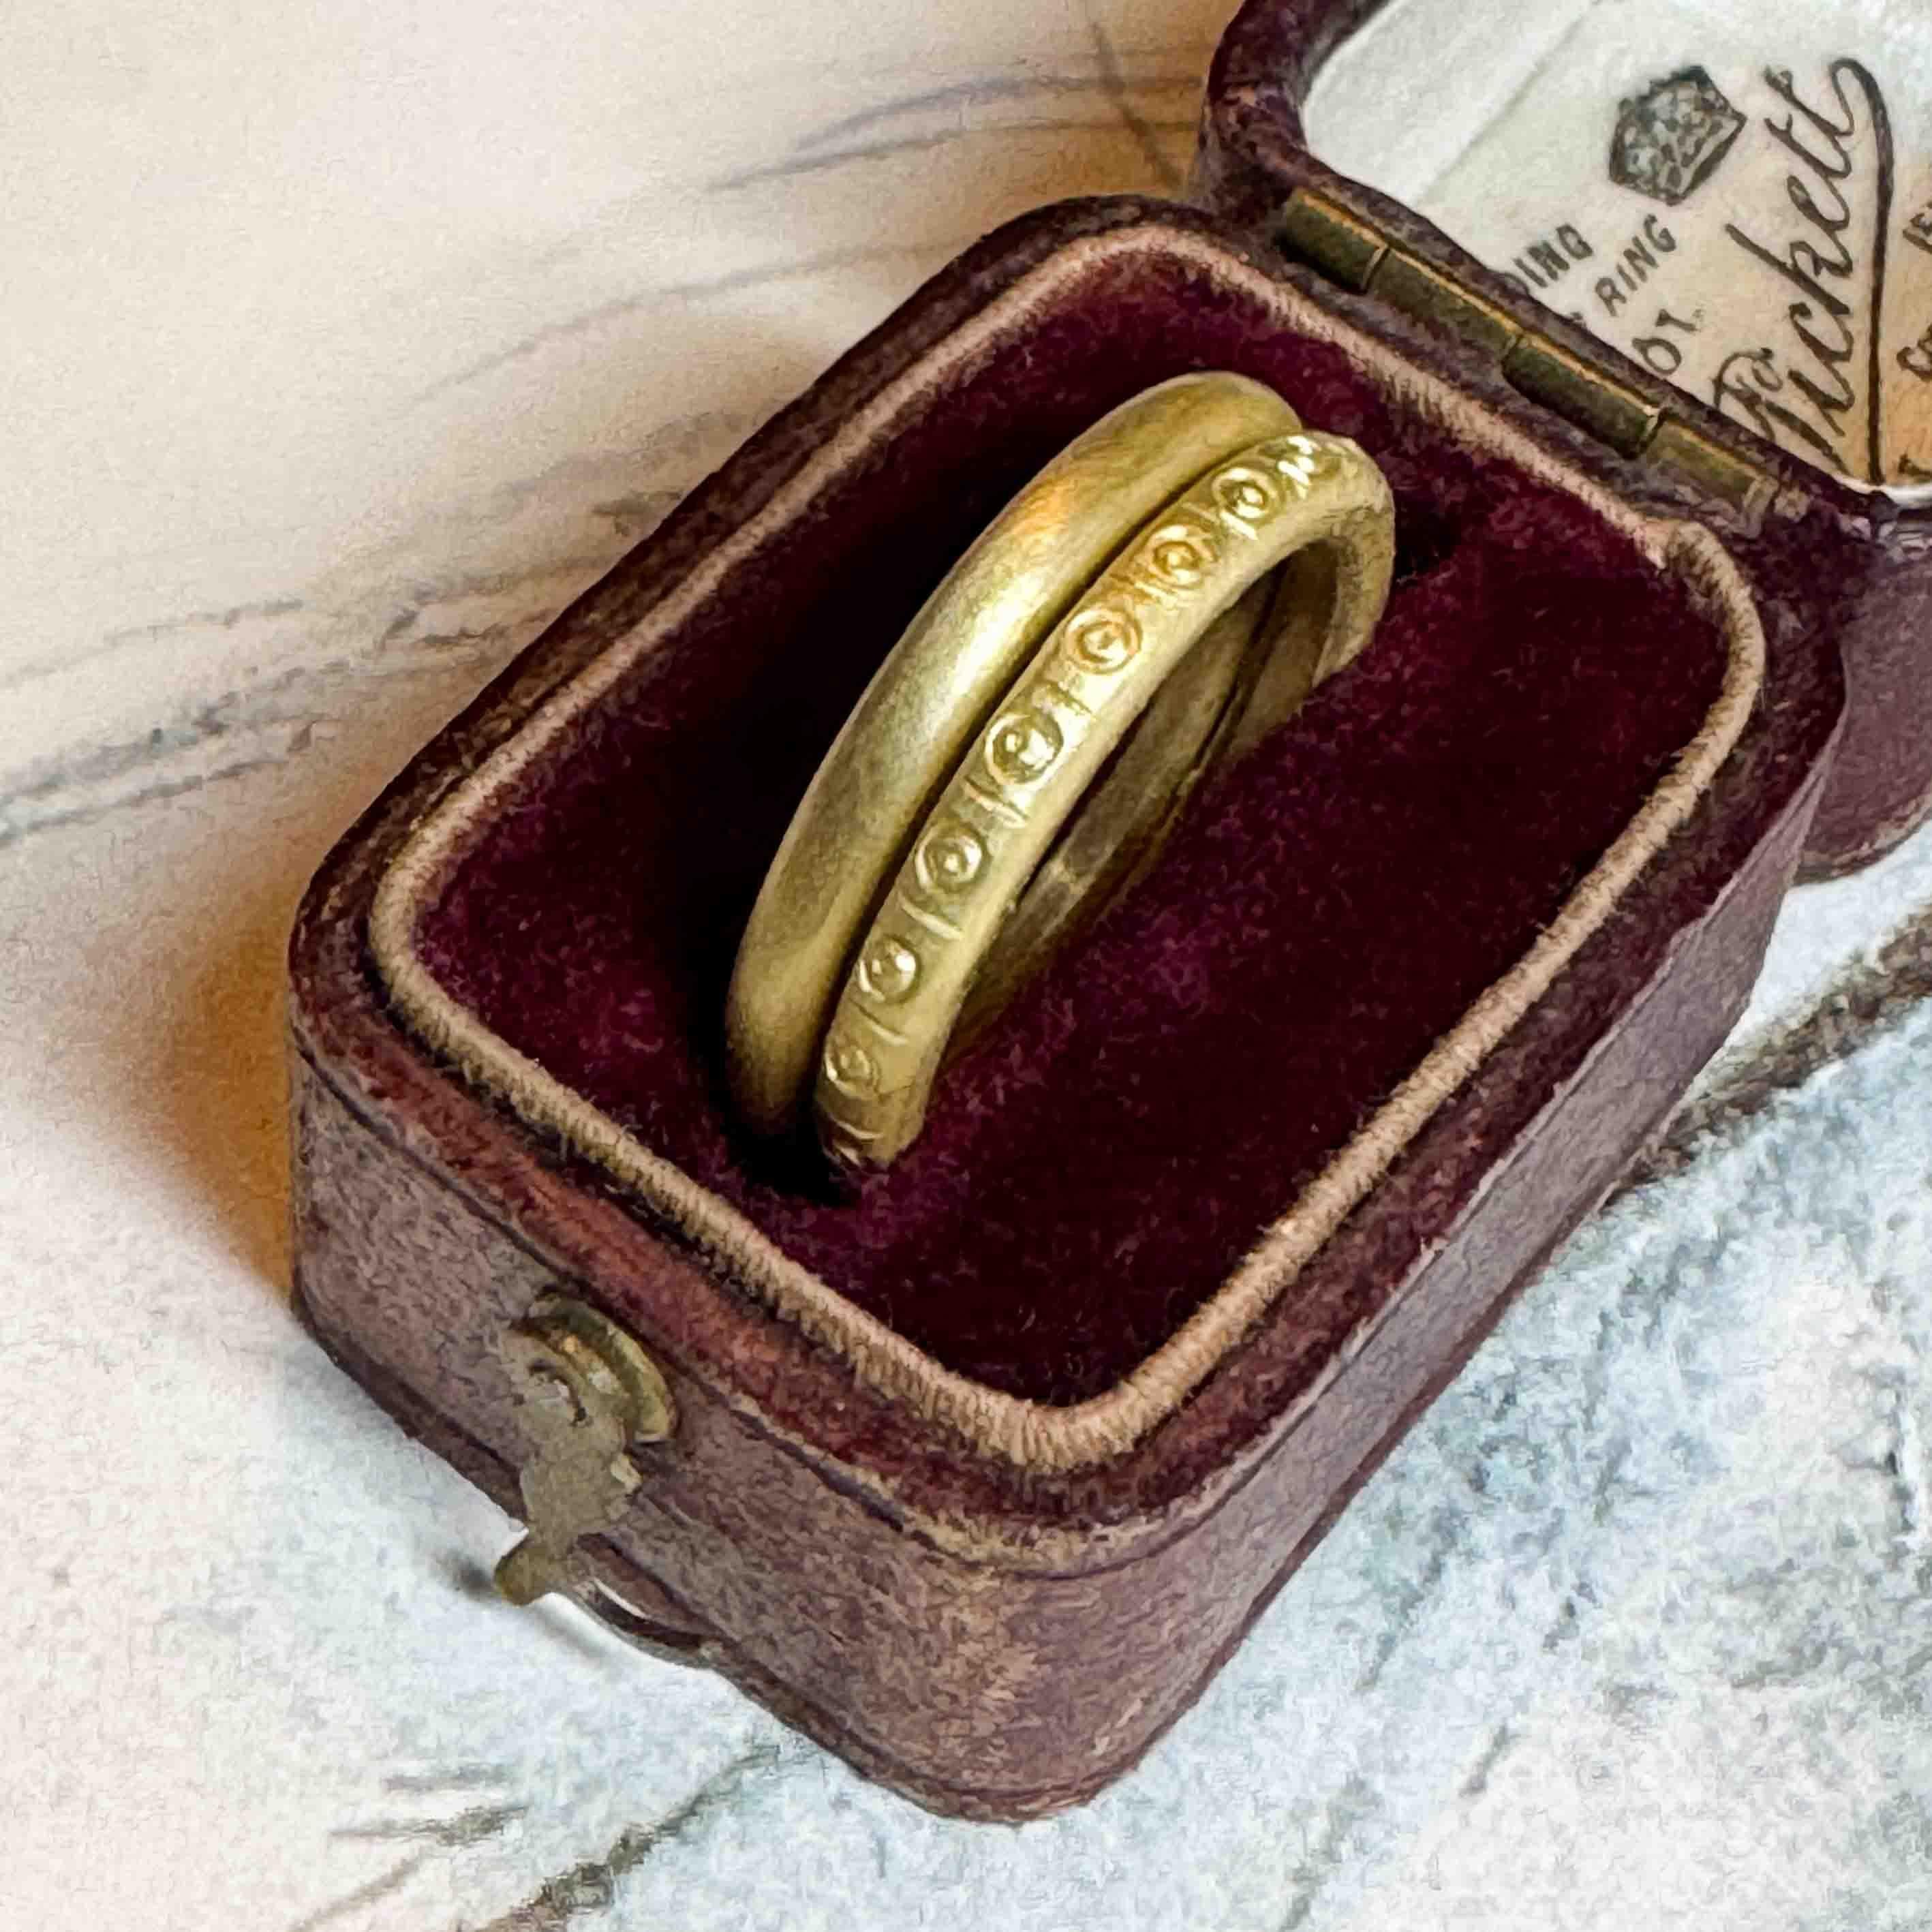 Der ethische Ehering Romi wird aus 18 Karat Fairmined-Gold handgefertigt. Zusammen mit den handgeprägten Mustern entsteht so ein einzigartiger, handwerklich gefertigter Ring, den Sie nicht auf der Straße finden.

Romi ist ein runder Ring mit 2,3 mm